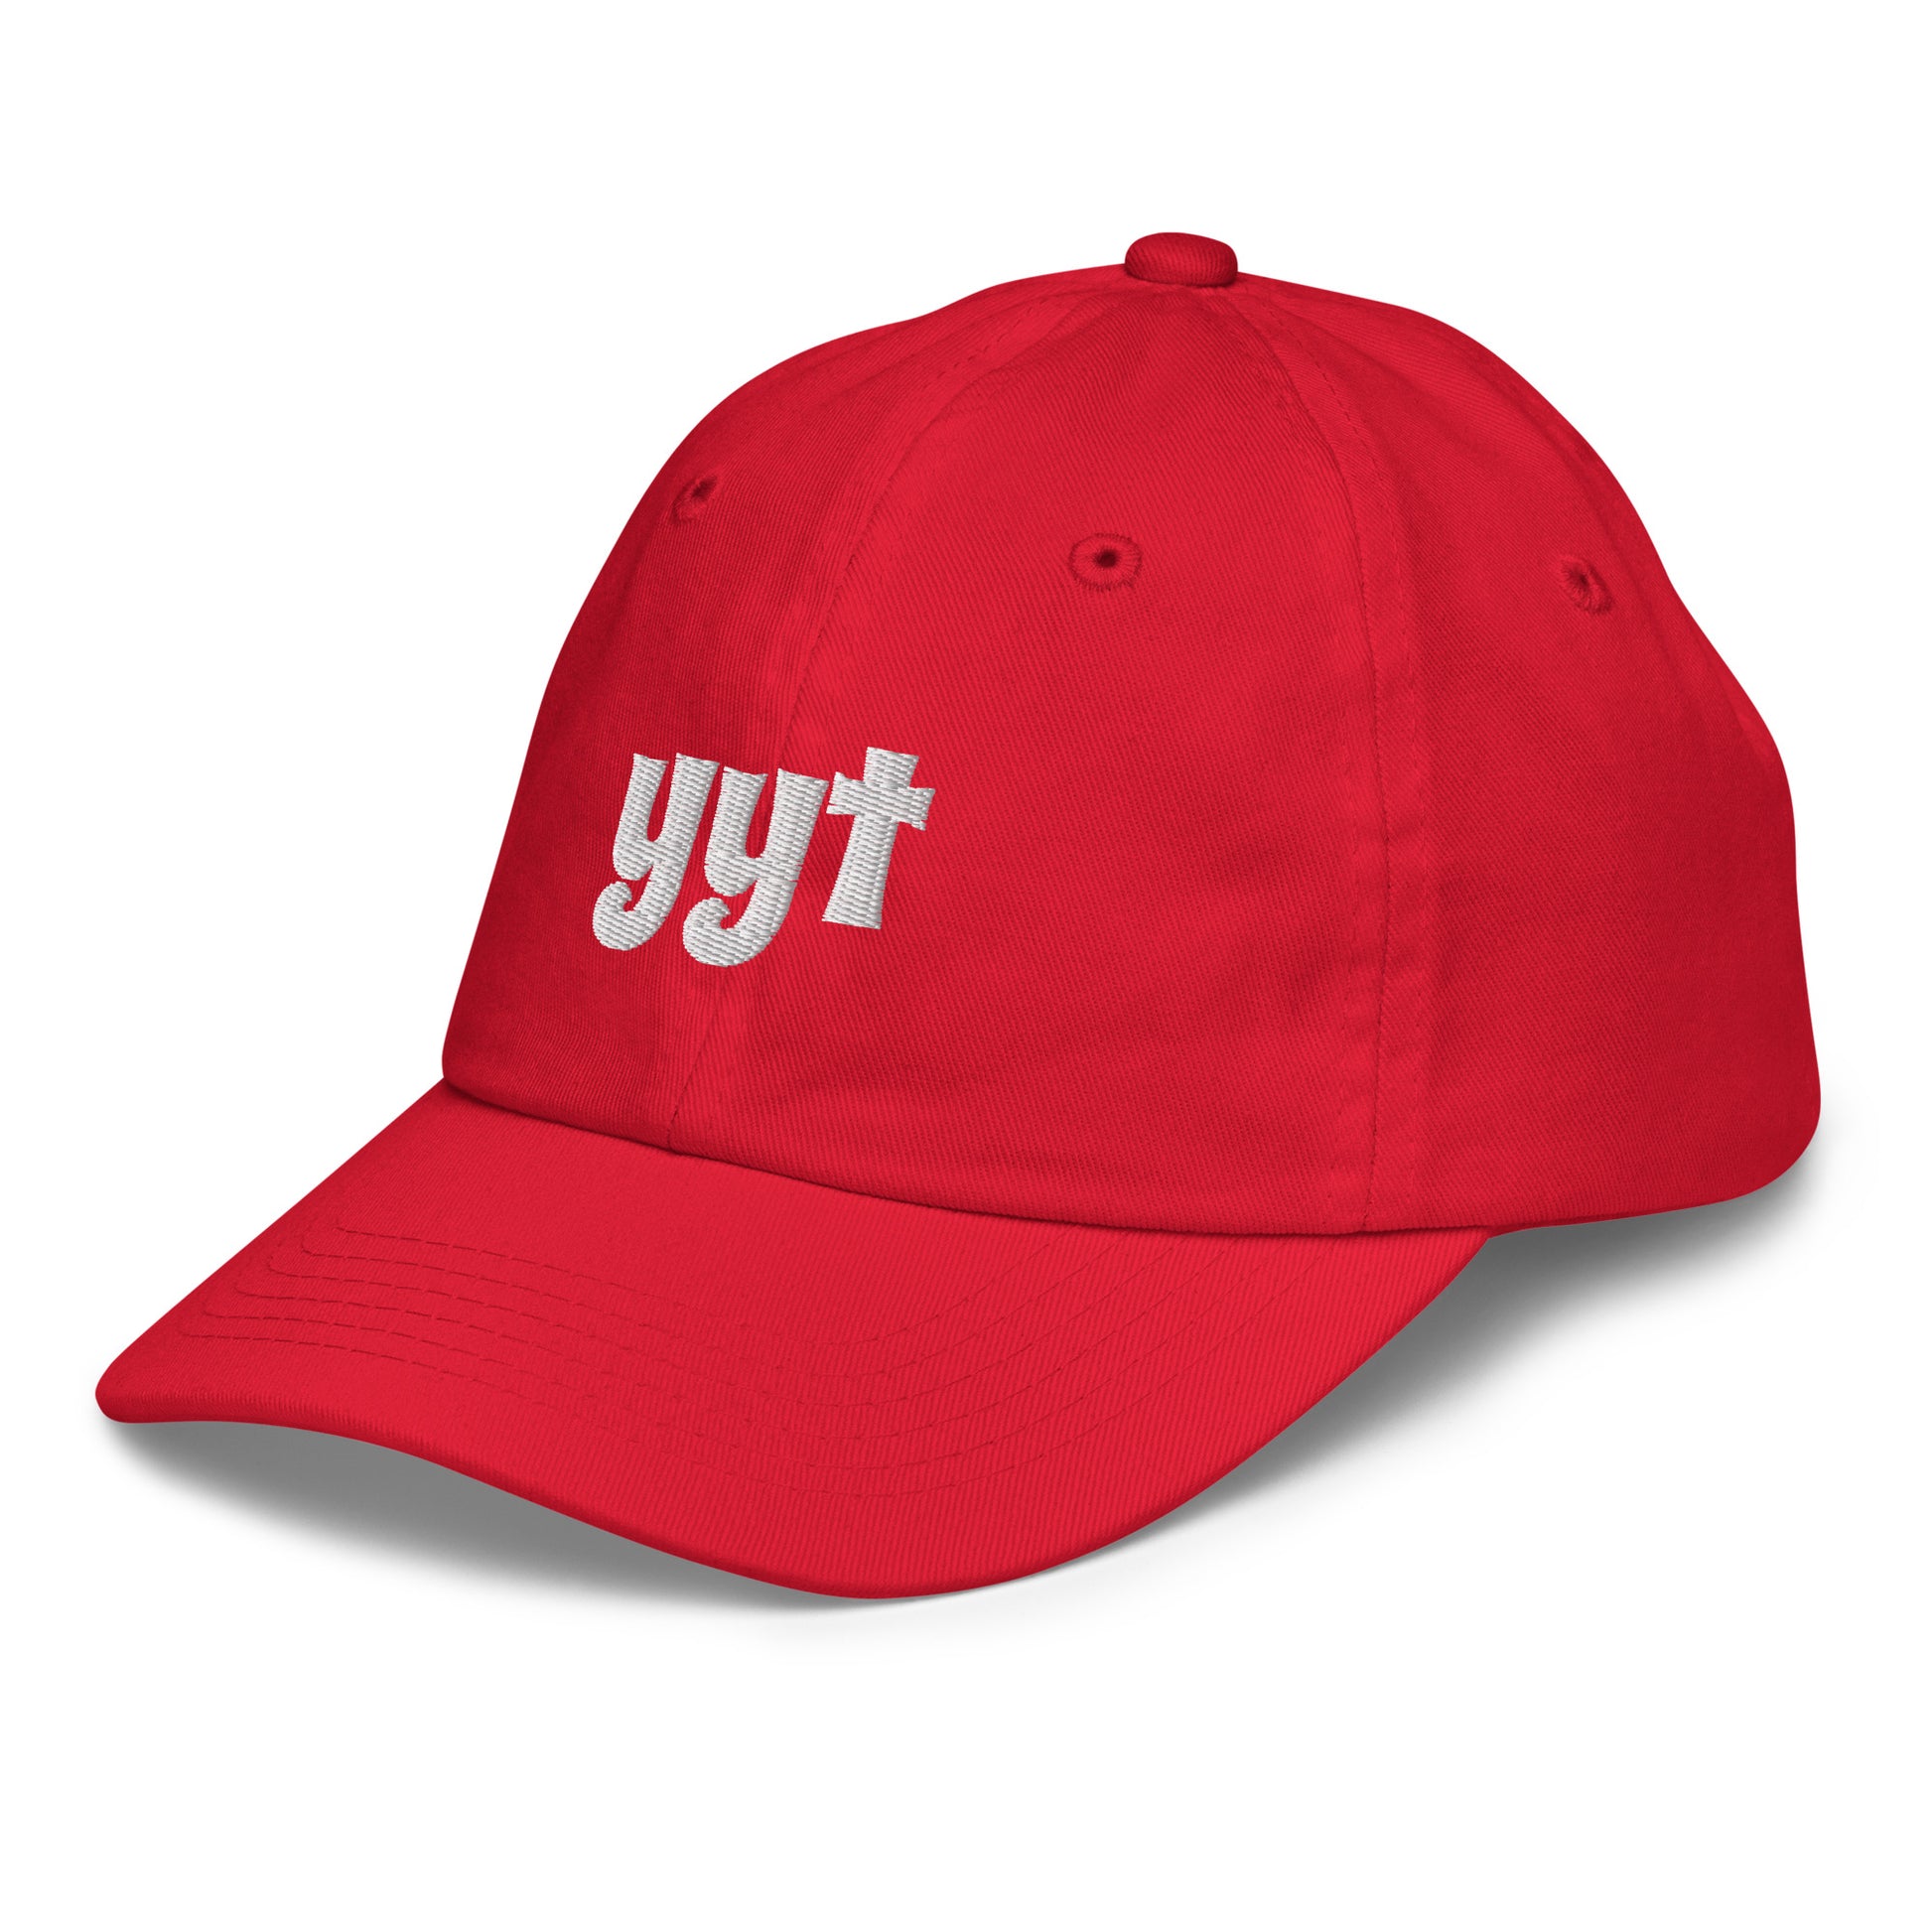 Groovy Kid's Baseball Cap - White • YYT St. John's • YHM Designs - Image 14